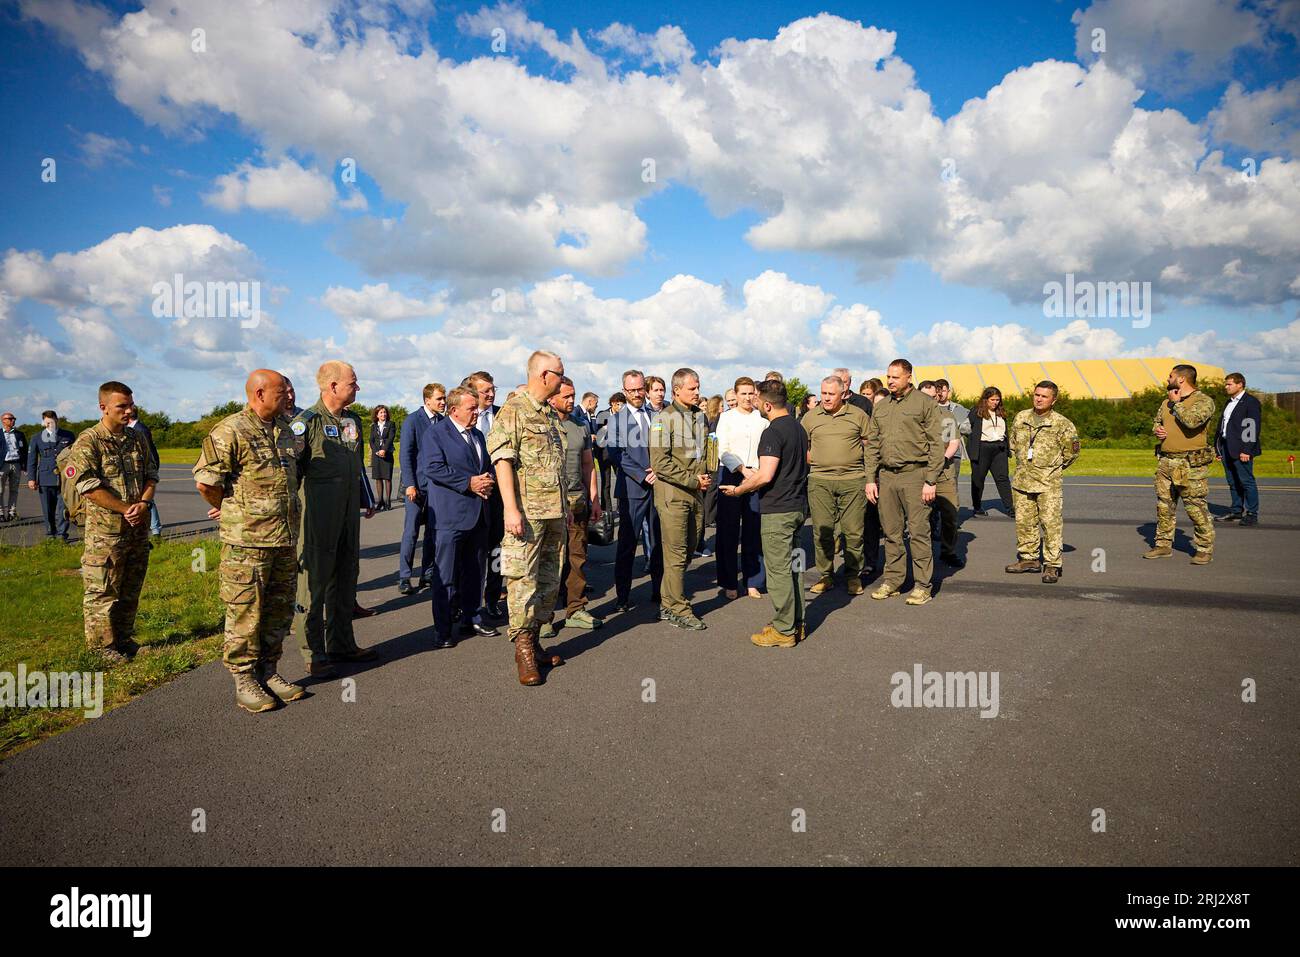 Au cours d'une visite de travail au Royaume du Danemark, le président ukrainien, Volodymyr Zelensky, a visité la base aérienne Fighter Wing Skrydstrup de la Royal Danish Air Force. Accompagné du Premier ministre danois mette Frederiksen et du Royal Air Force Command, le Chef de l’État s’est familiarisé avec les caractéristiques techniques des avions F-16 Fighting Falcon et le programme de formation des pilotes ukrainiens à bord de ces avions. Il a parlé avec des pilotes ukrainiens qui suivent une formation sur des F-16 pour protéger le ciel ukrainien. Banque D'Images